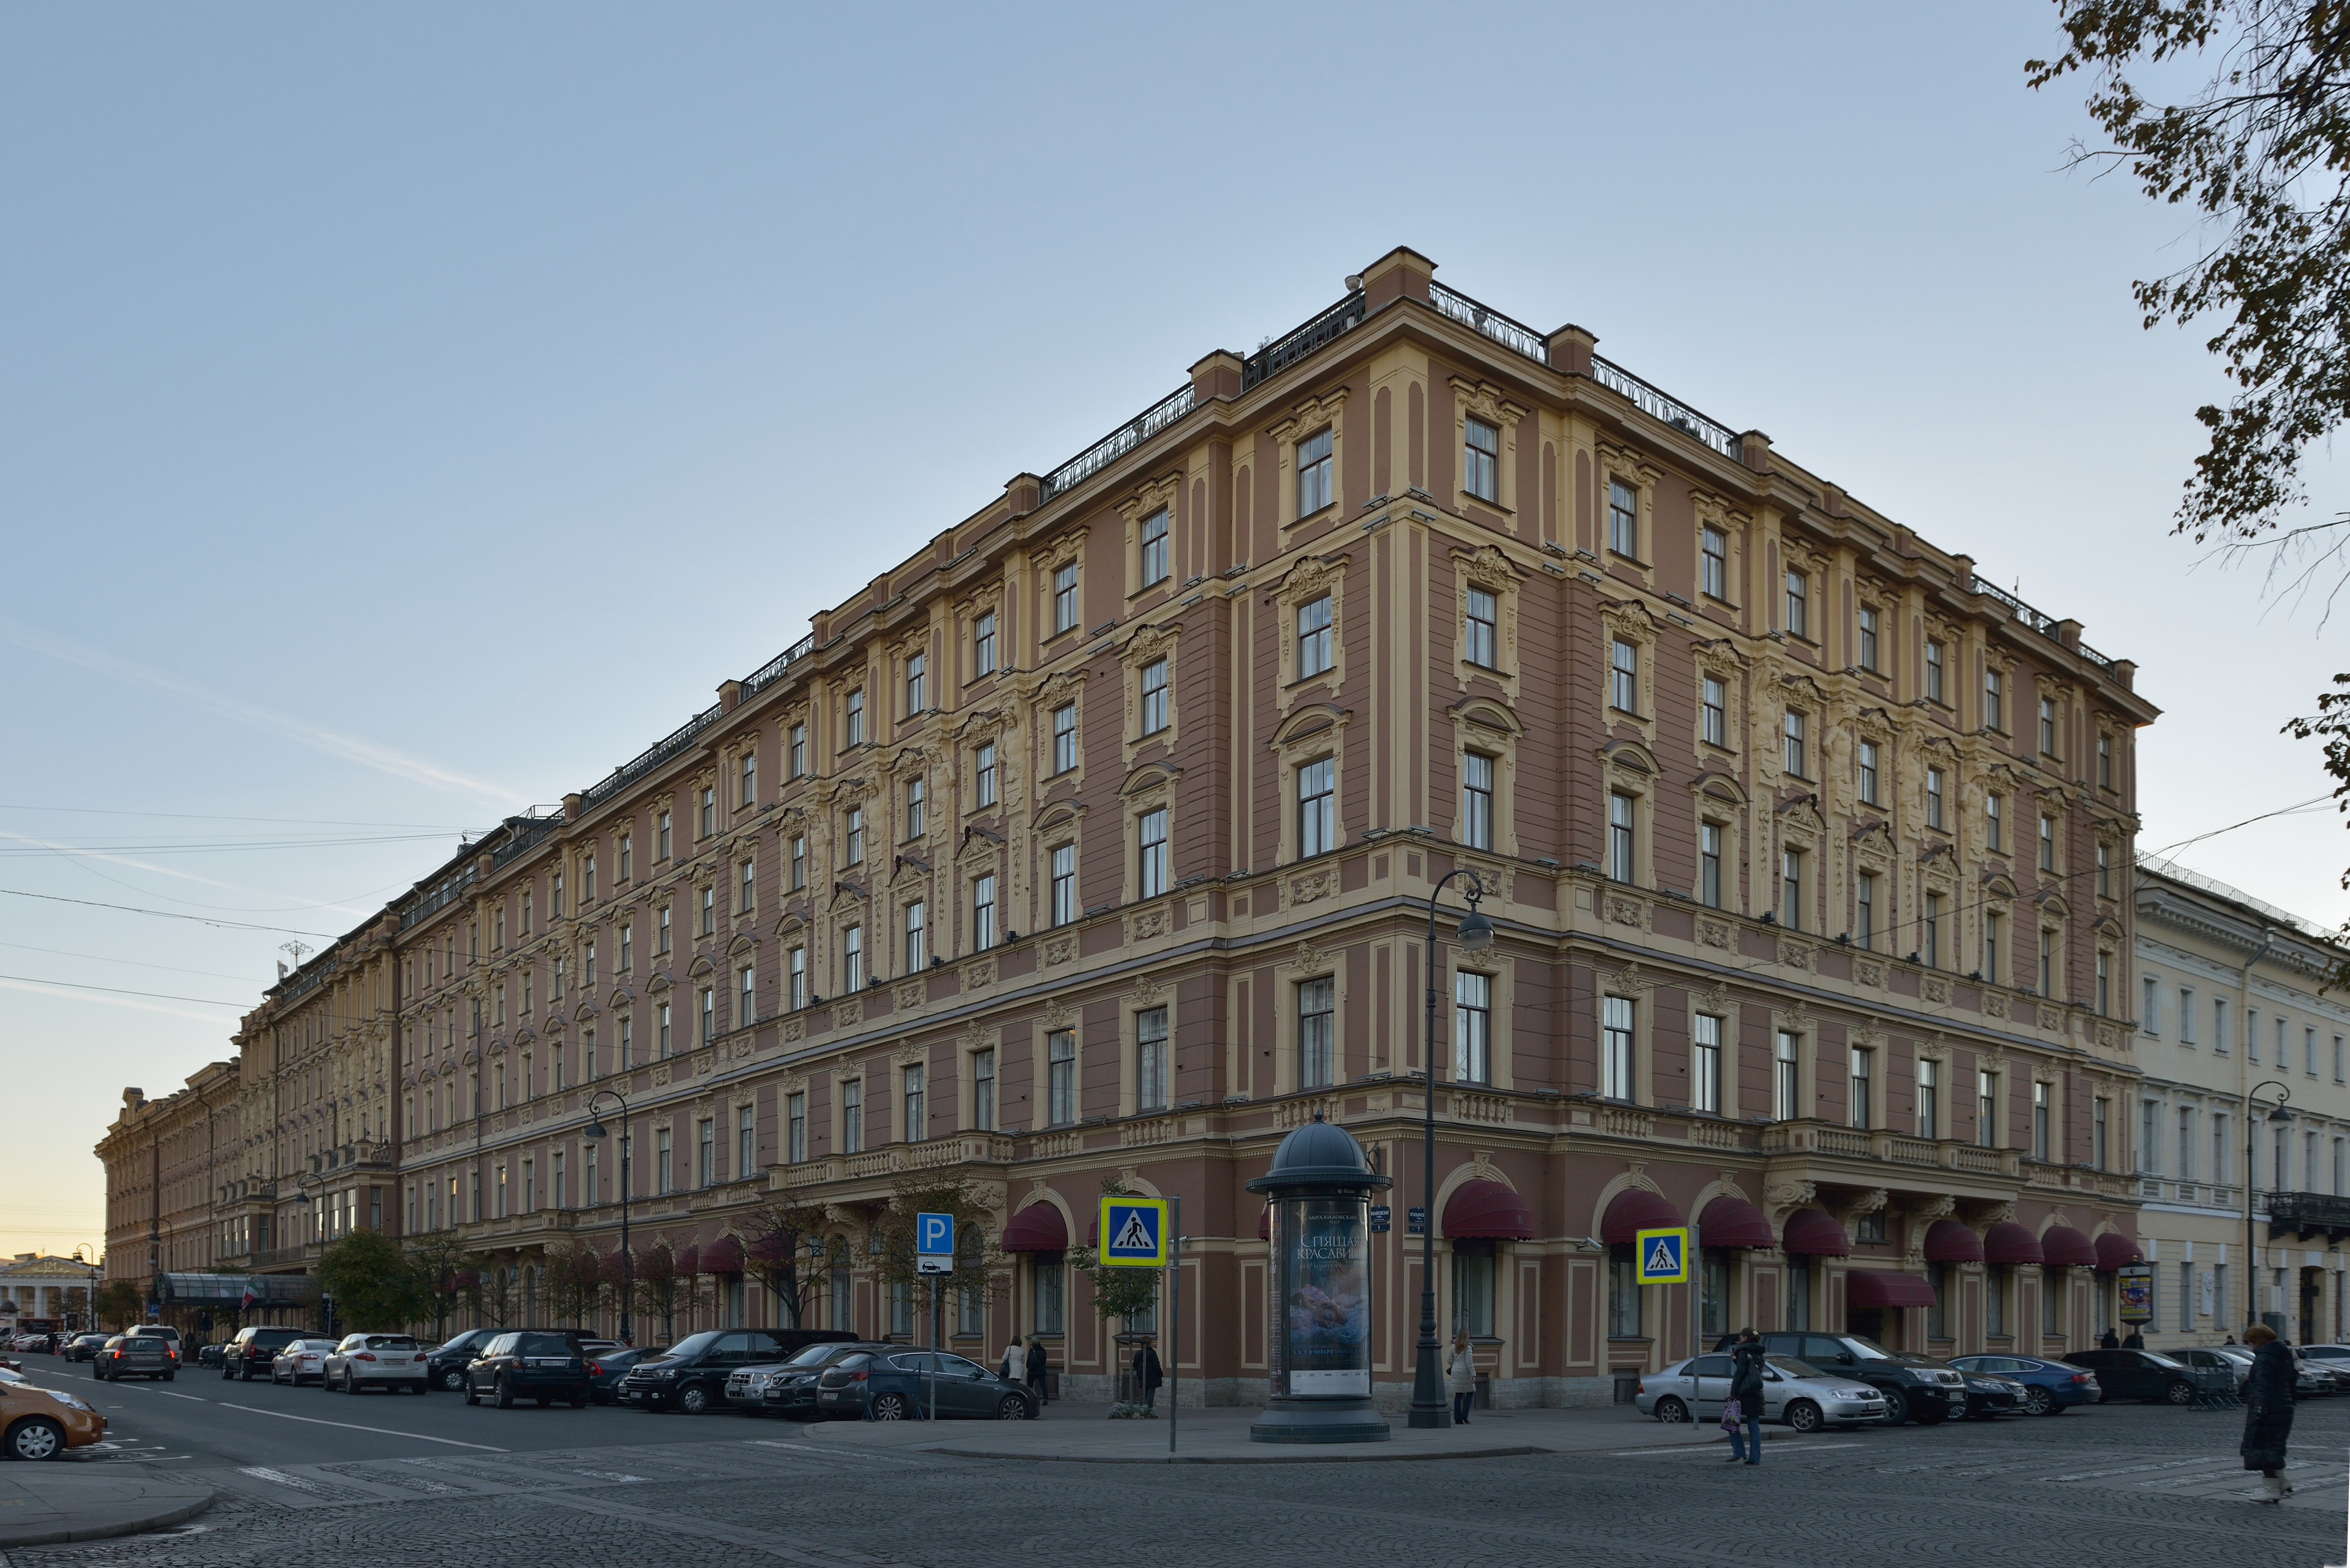 Belmond Grand Hotel Europe Saint Petersburg from NE